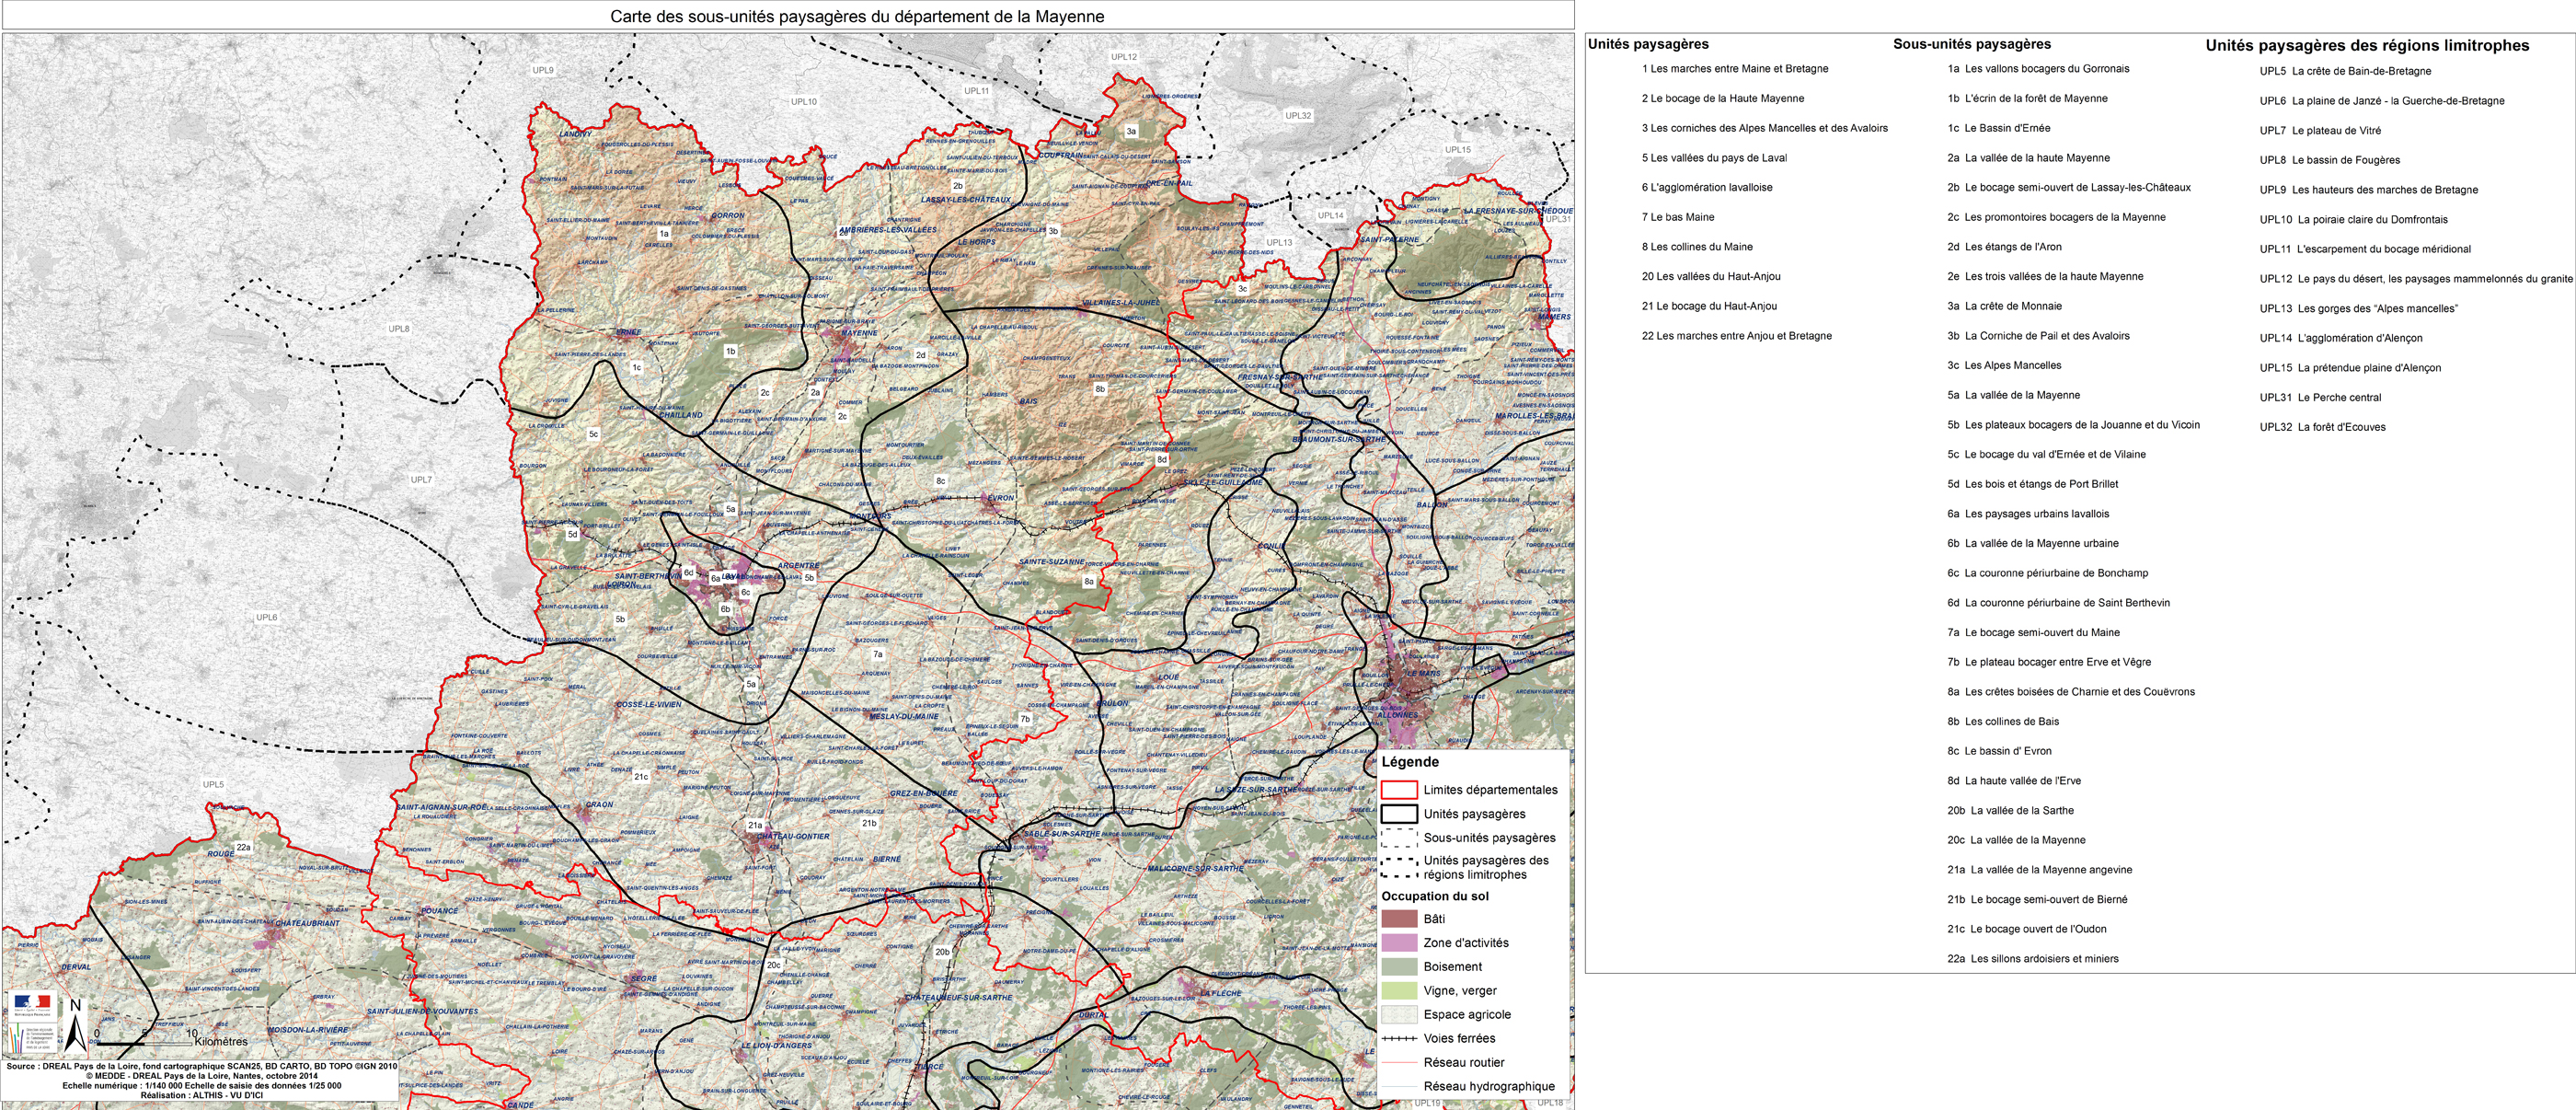 Carte des unités paysagères du département de la Mayenne en grand format (nouvelle fenêtre)